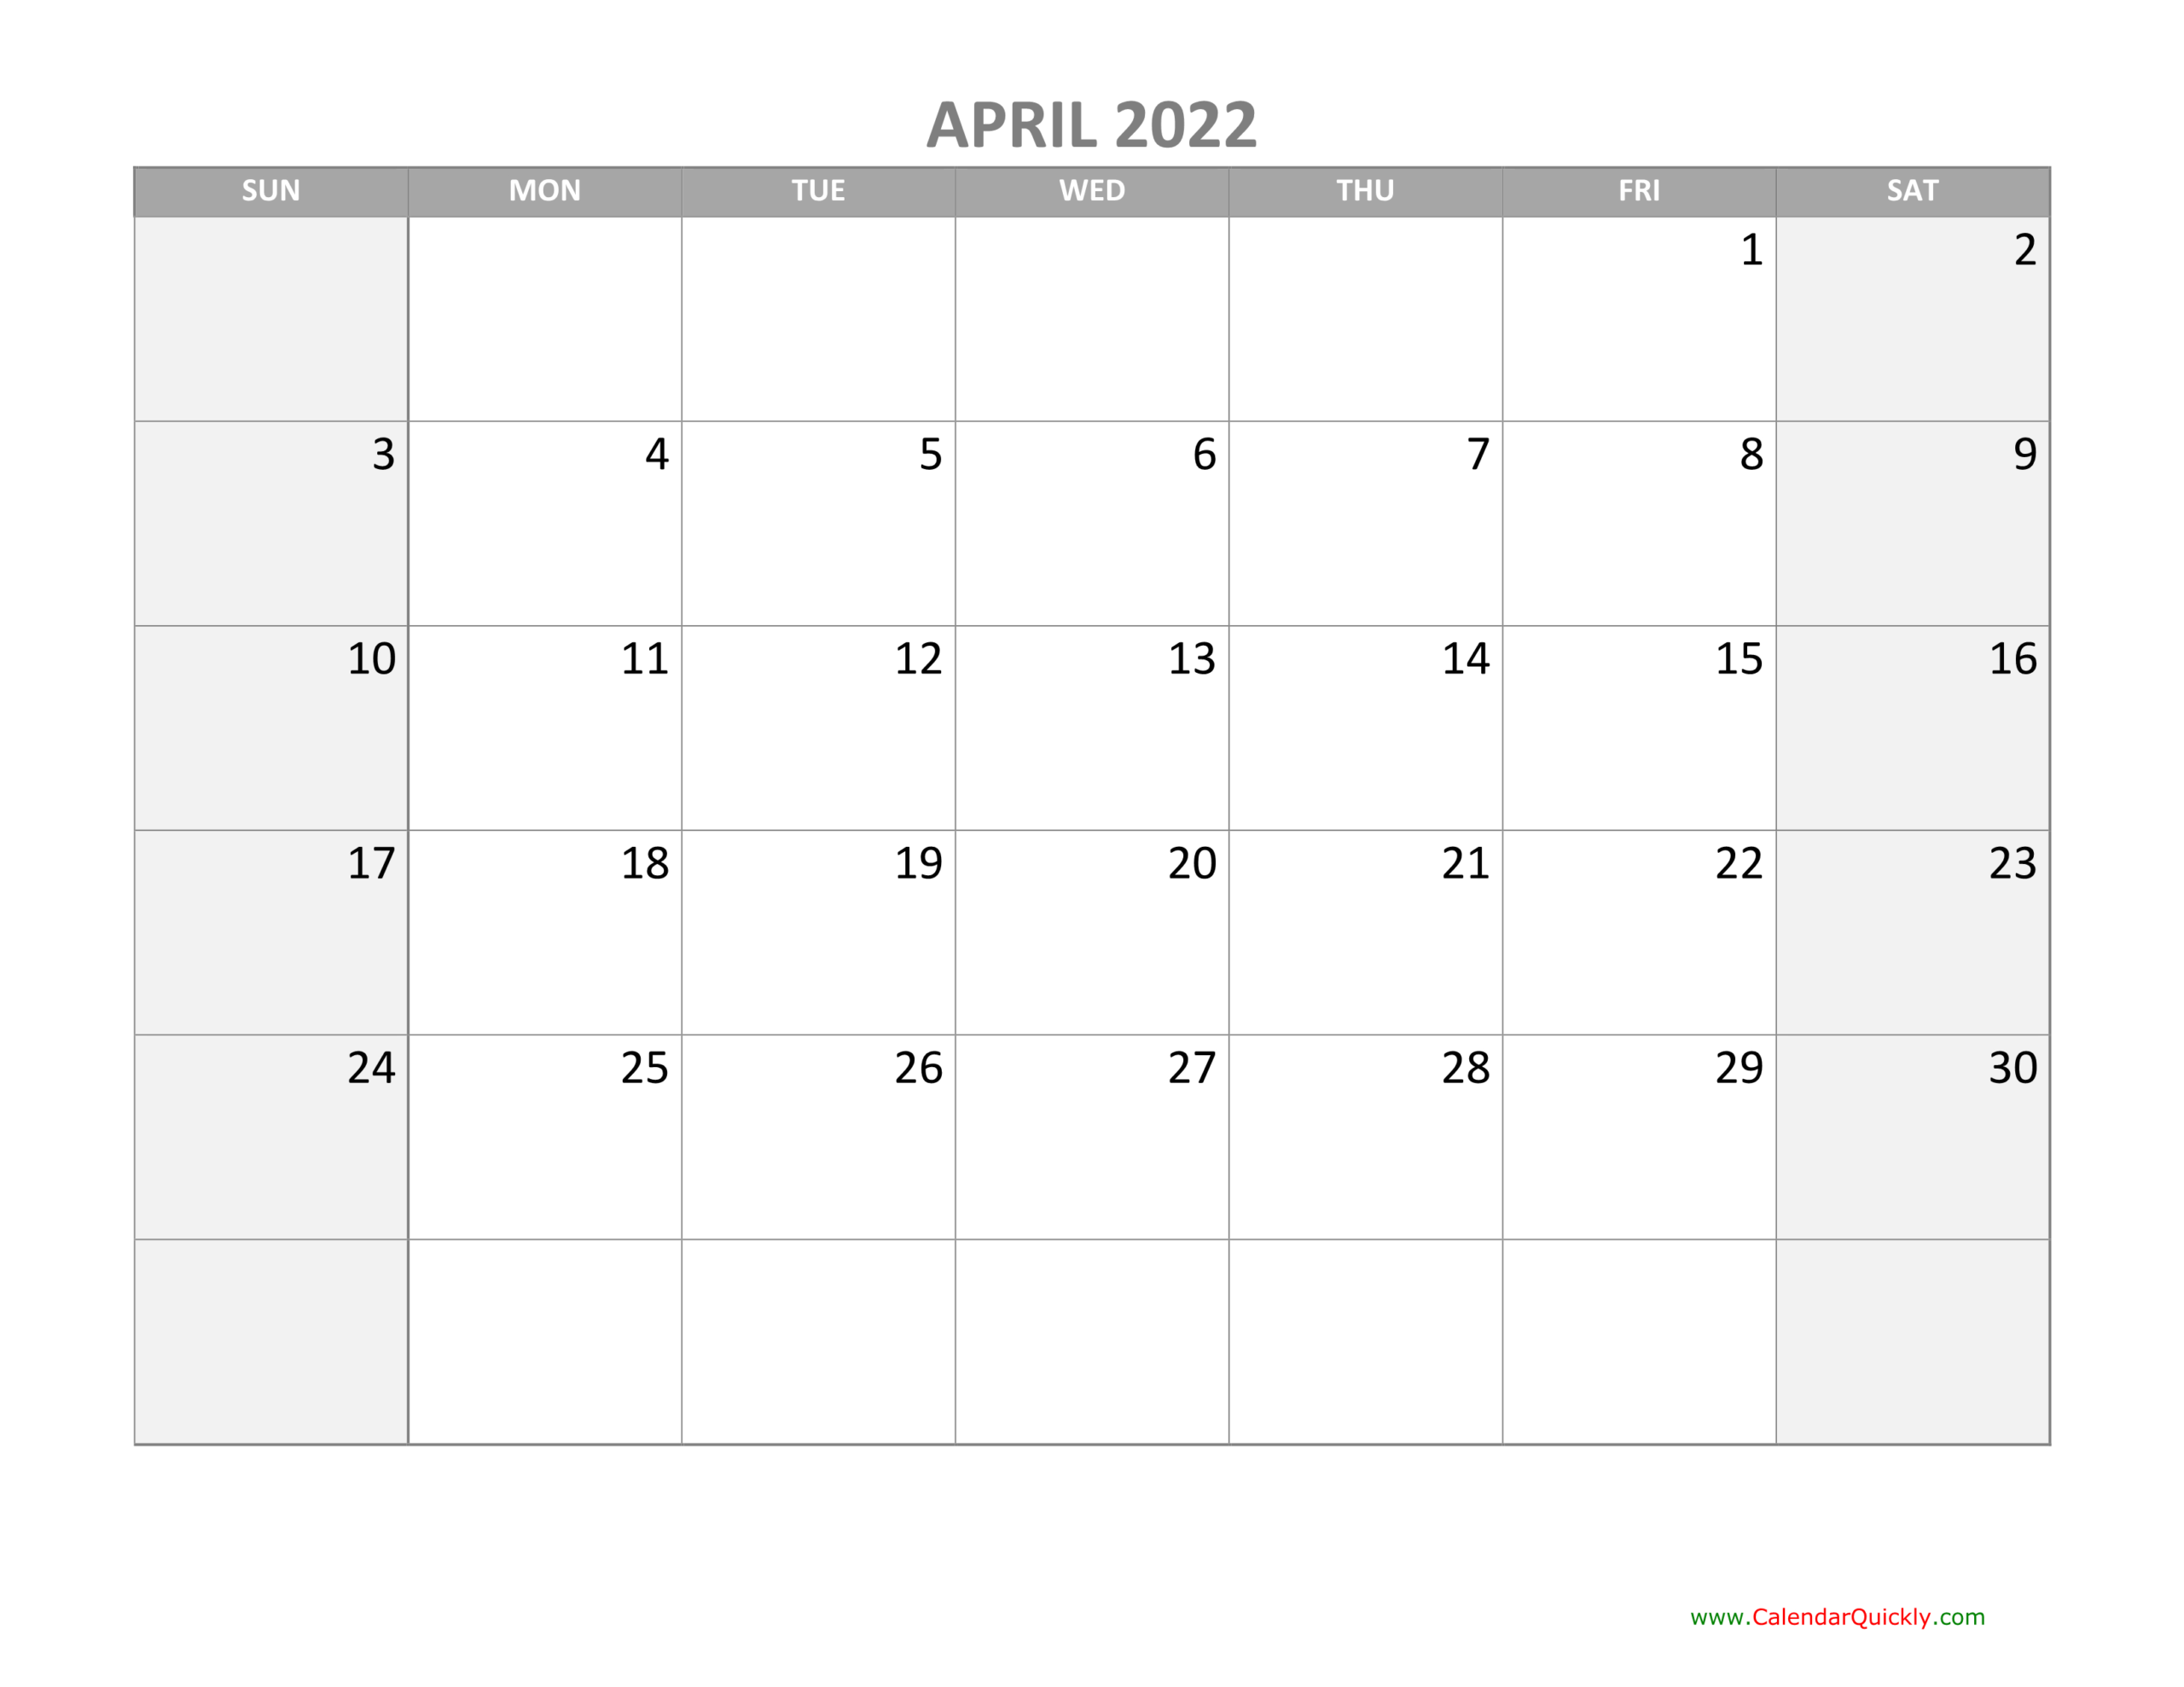 April Calendar 2022 With Holidays | Calendar Quickly